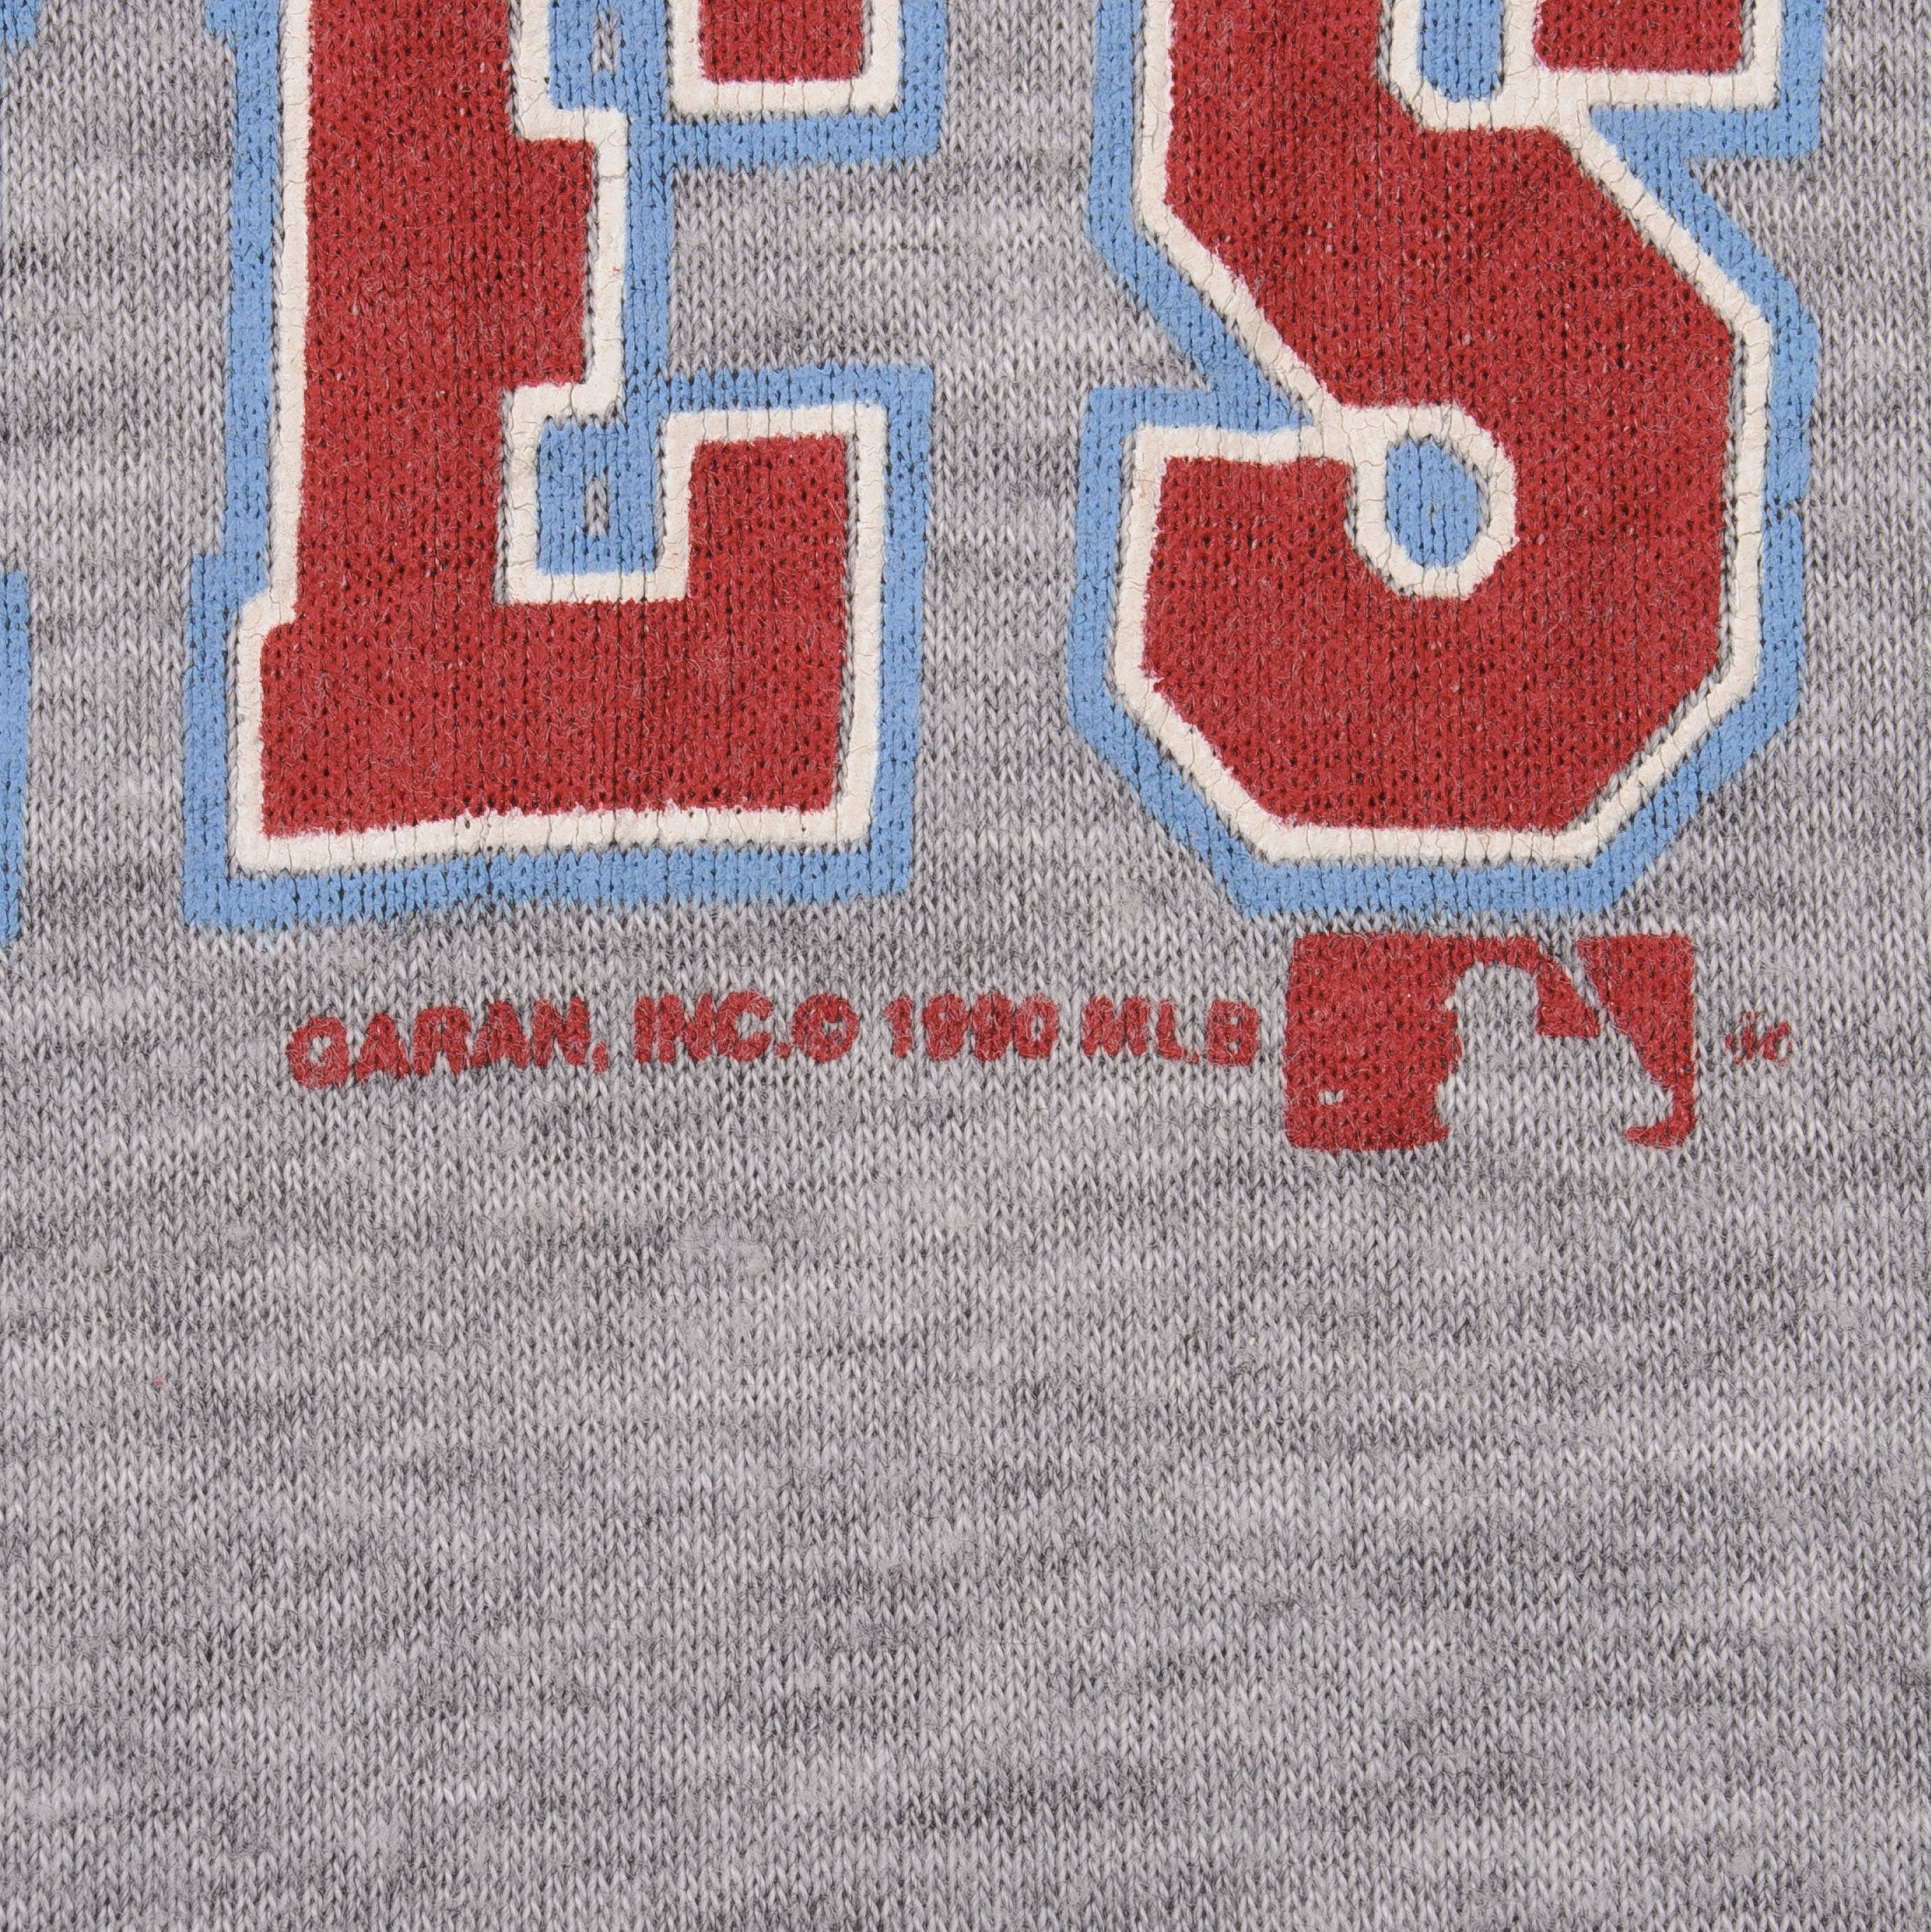 Vintage 90s MLB Philadelphia Phillies Baseball Shirt Unisex Men Women  KV10956